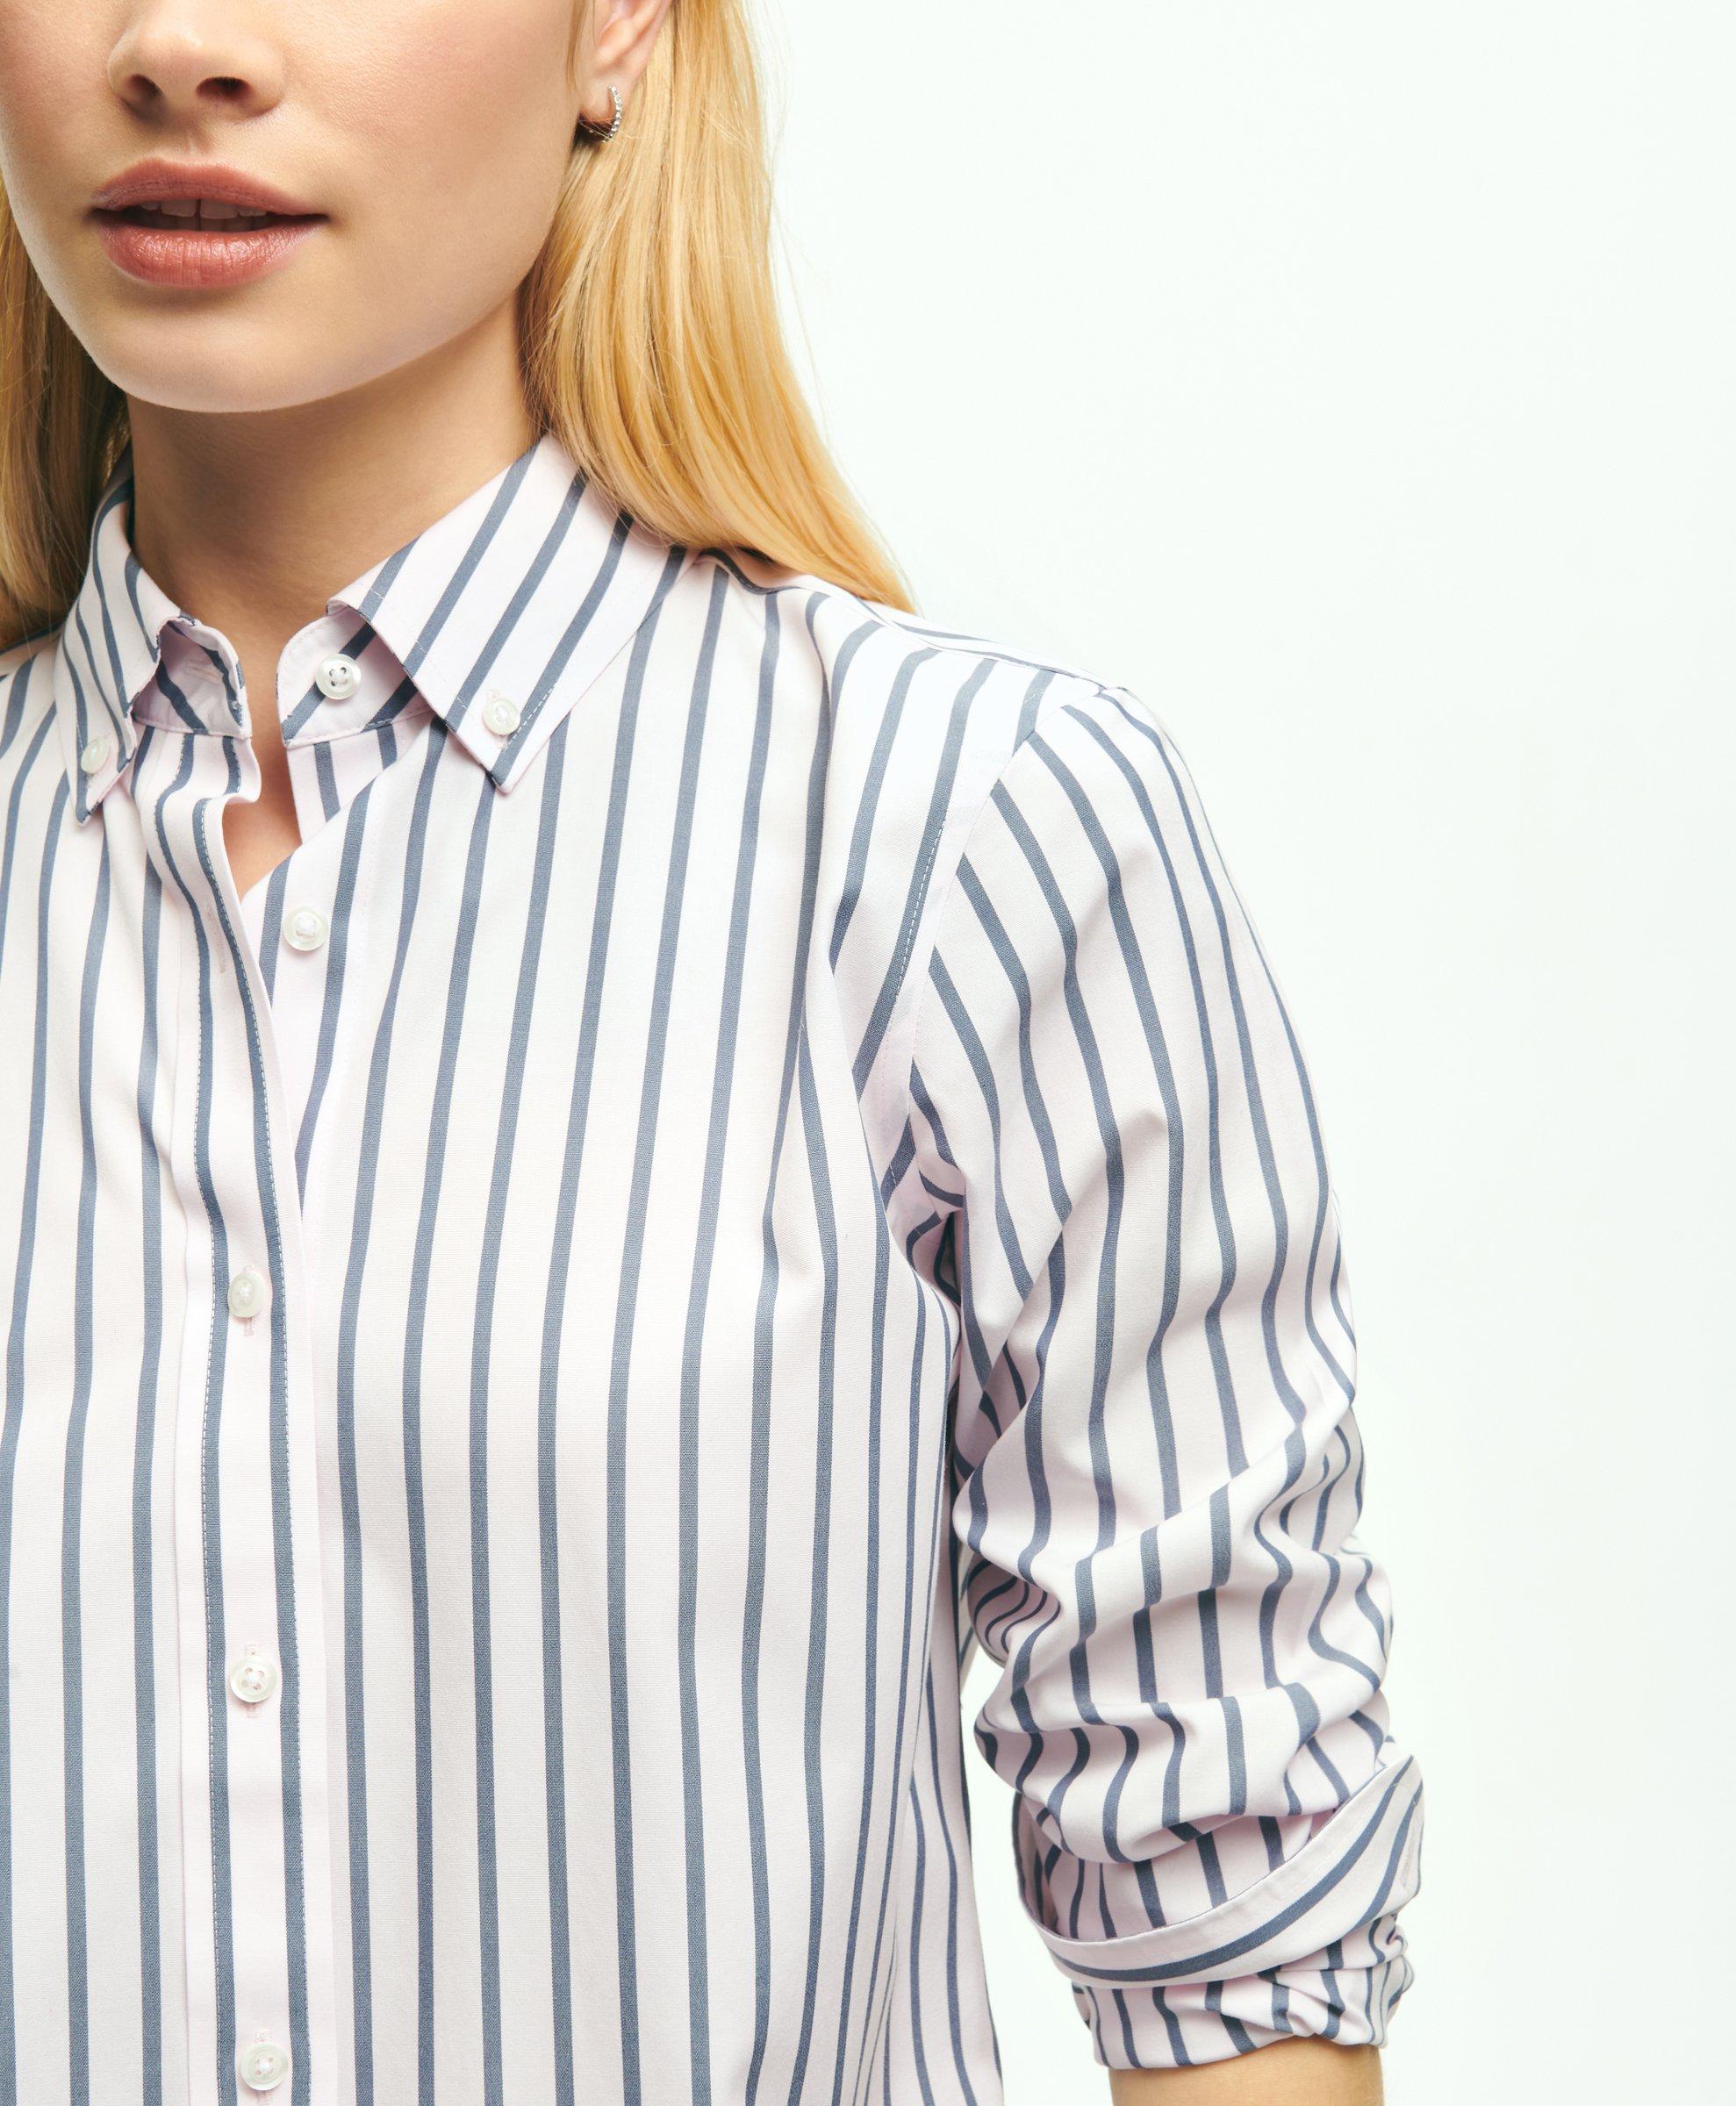 blue and white striped shirt dress, YSL white monogram chain